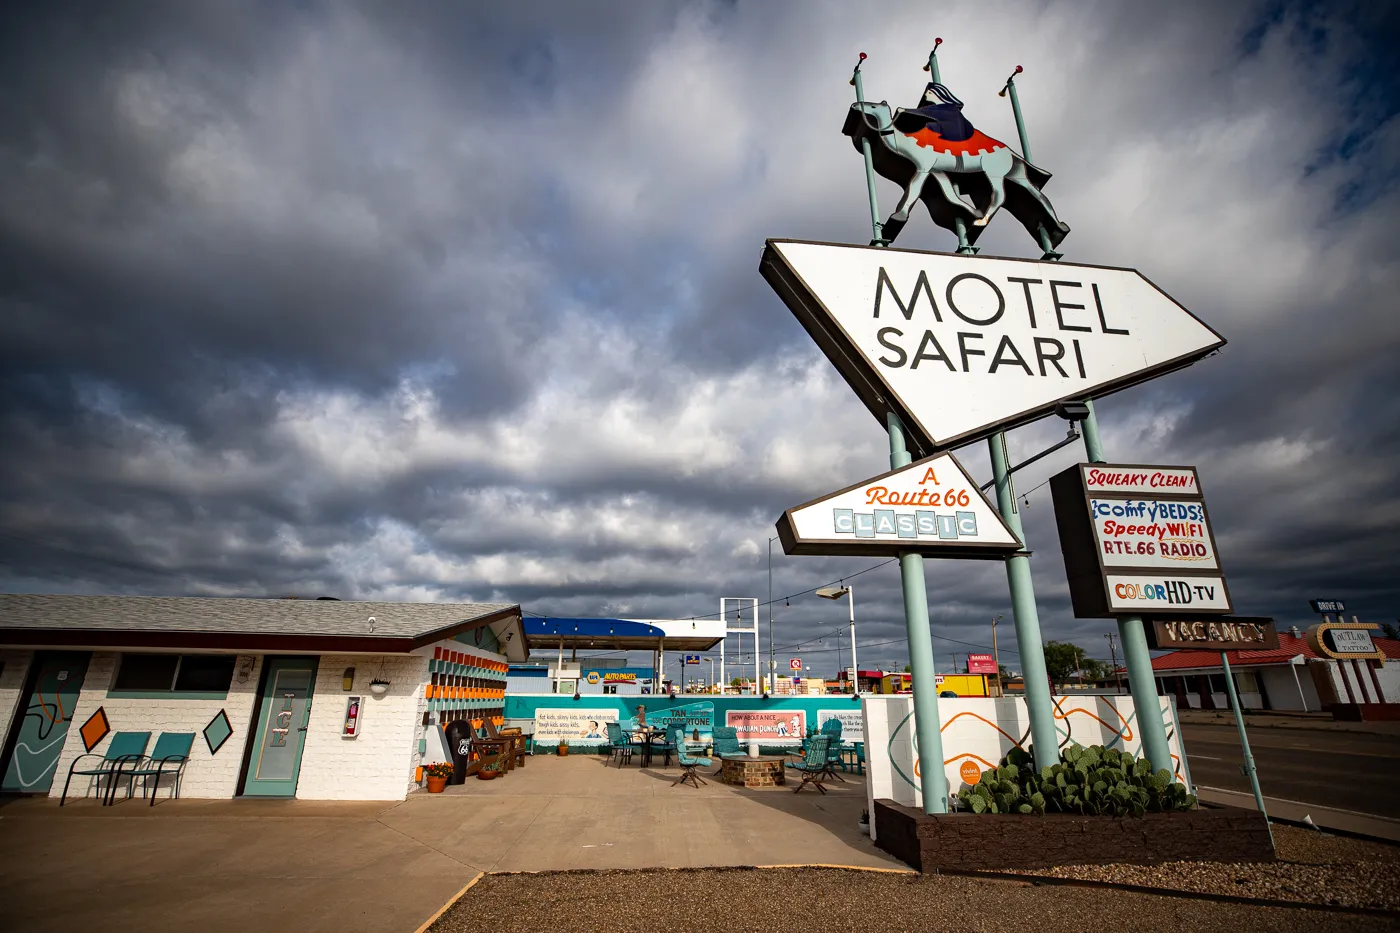 Retro Googie Motel Sign with a camel at Motel Safari in Tucumcari, New Mexico (Route 66 Motel)